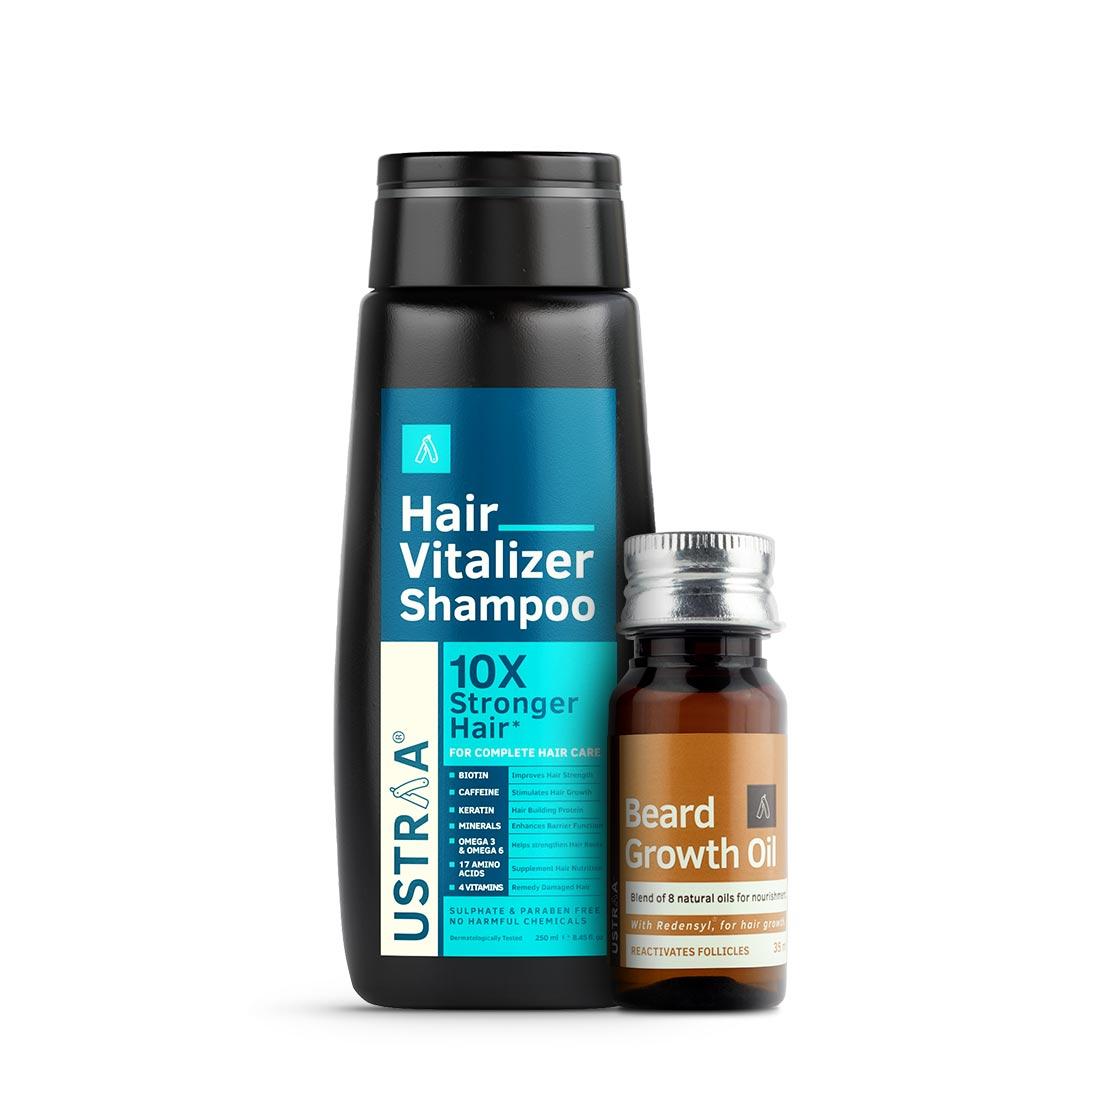 Hair Vitalizer Shampoo & Beard Growth Oil